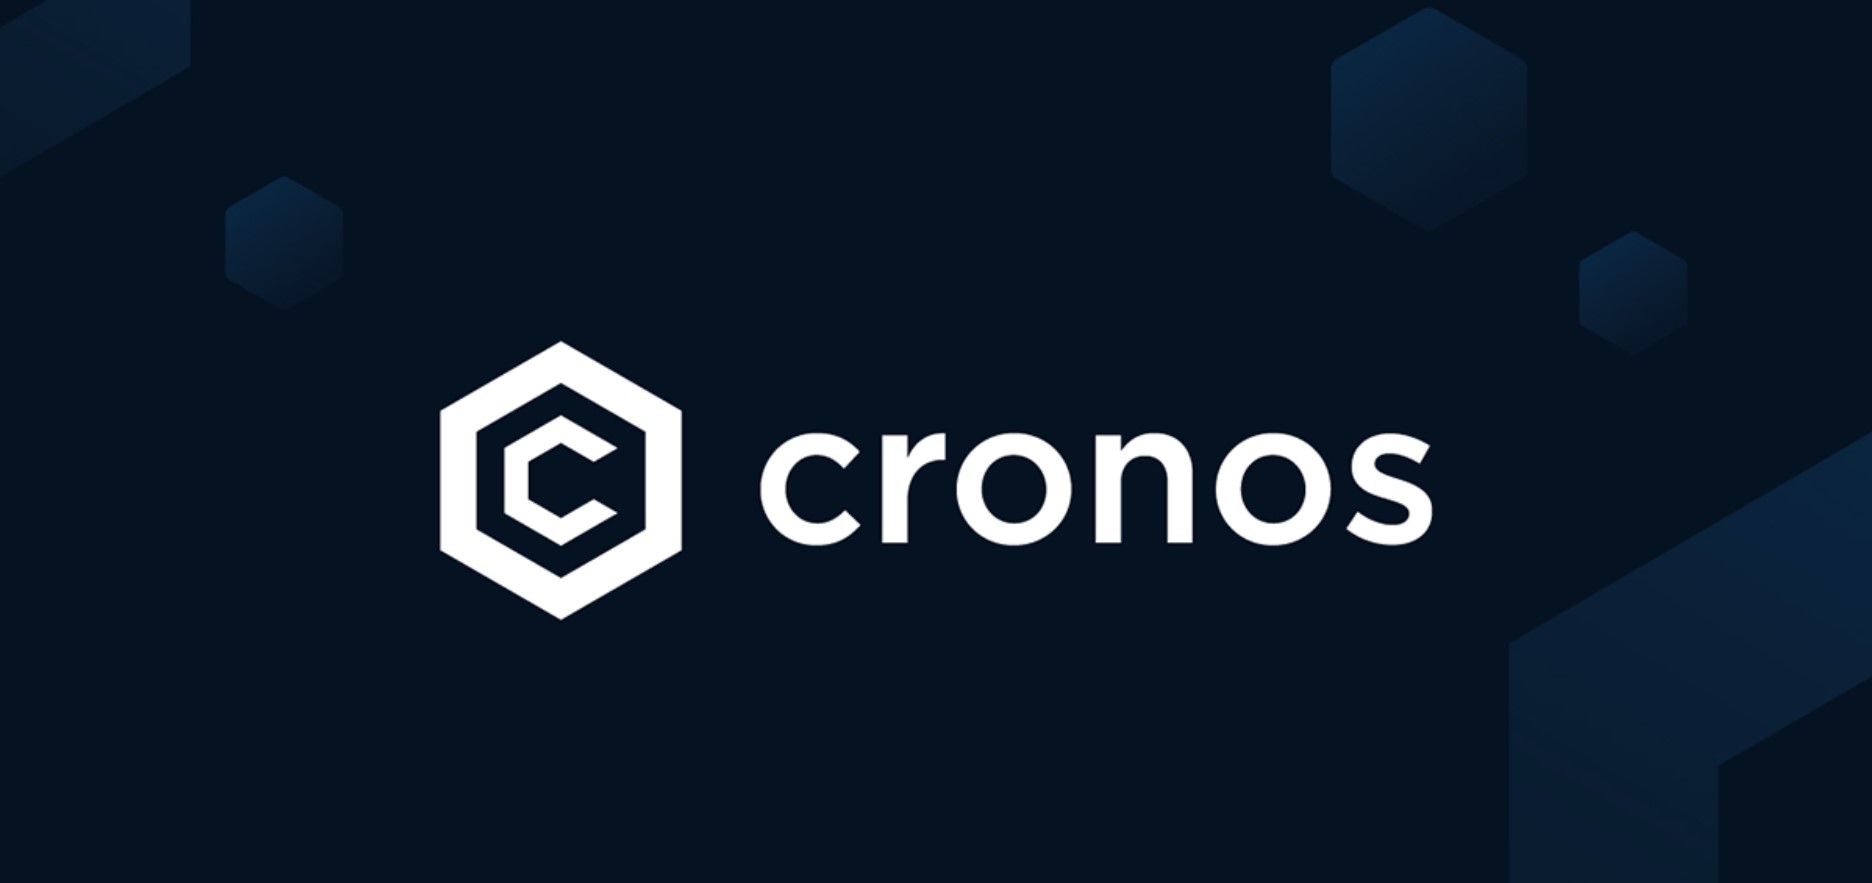 Cronos (CRO): Overview